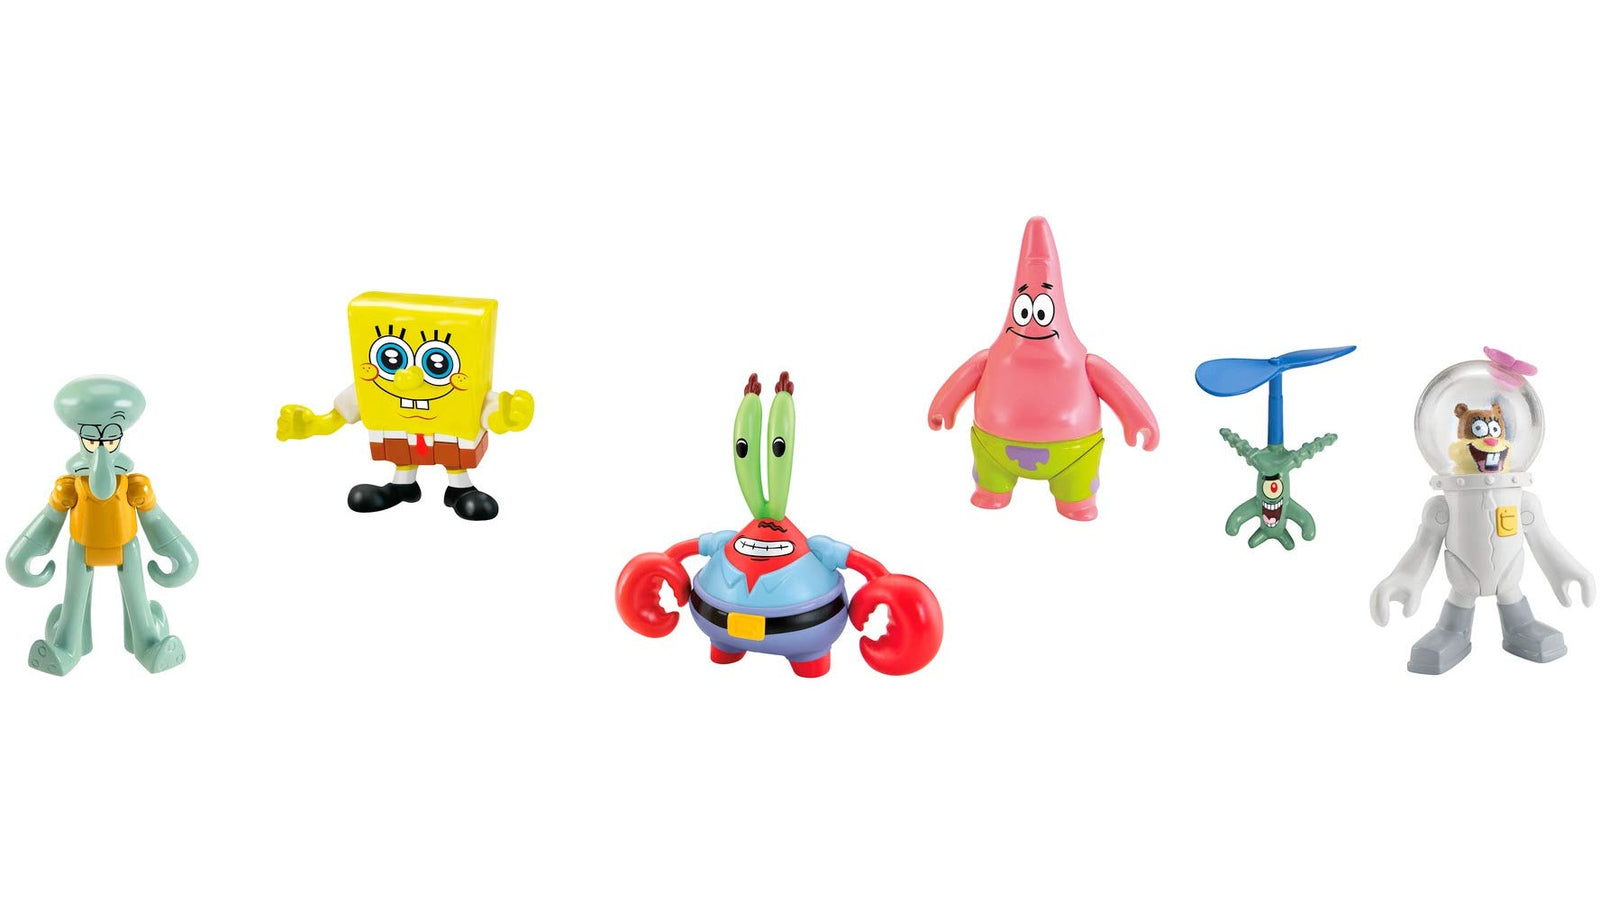 Fisher-Price Imaginext Spongebob Figure 6 Pack [Amazon Exclusive]